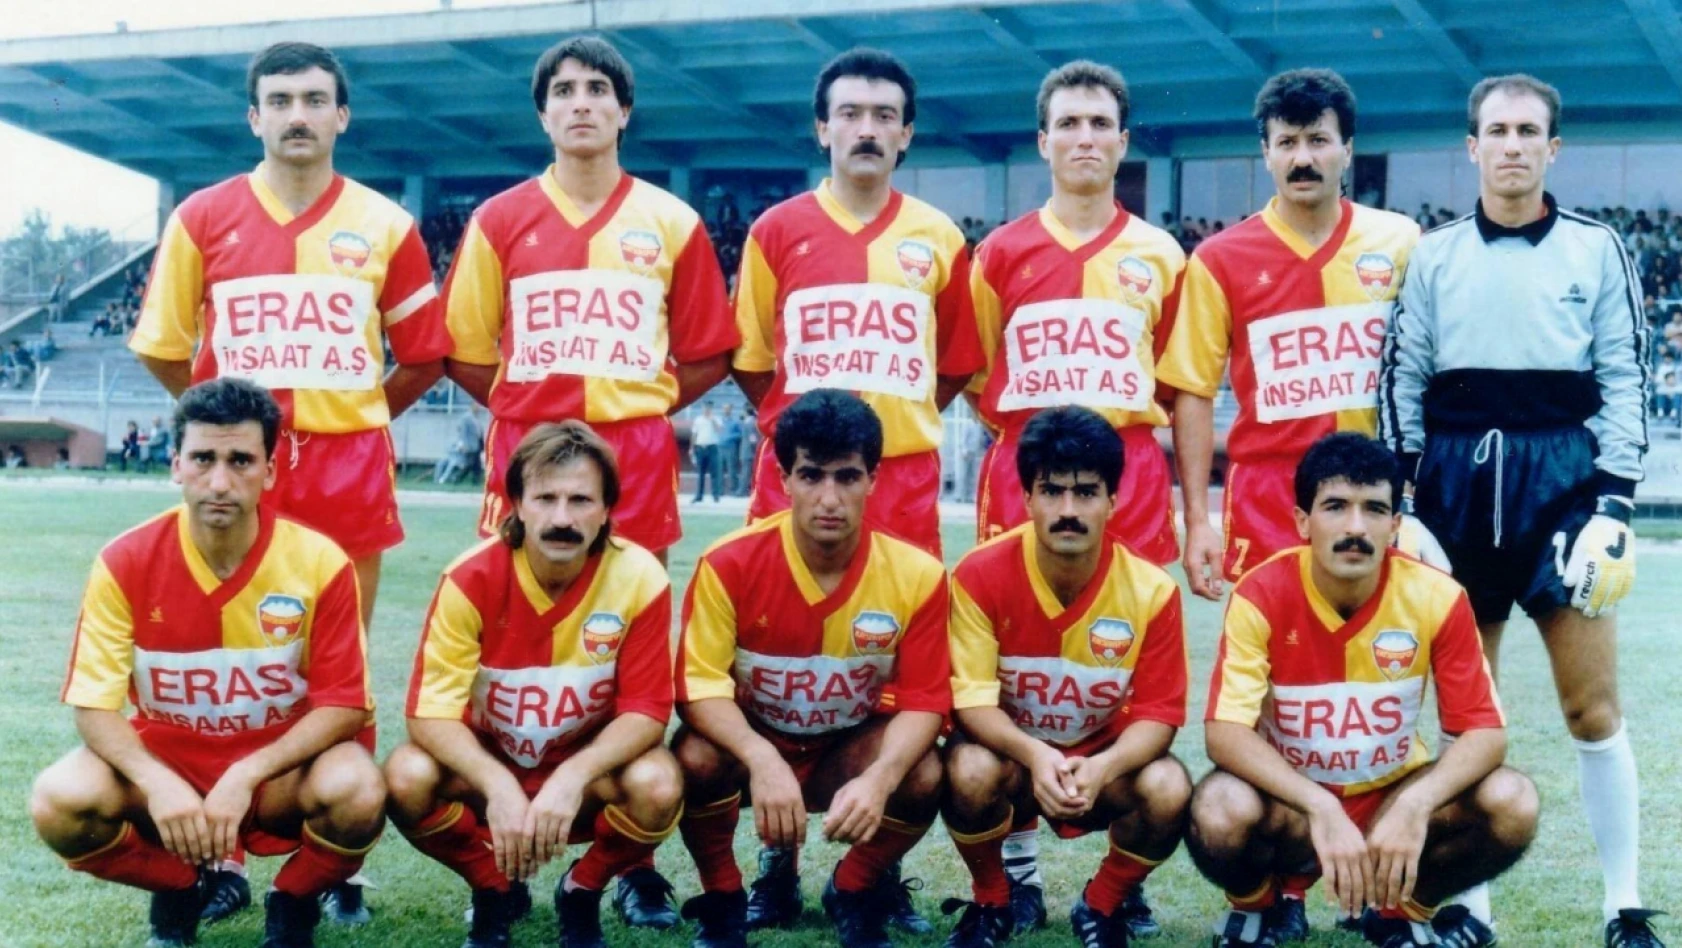 Hatırlayan var mı? 35 yıl önce Kayserispor'un kadrosunda kimler vardı?